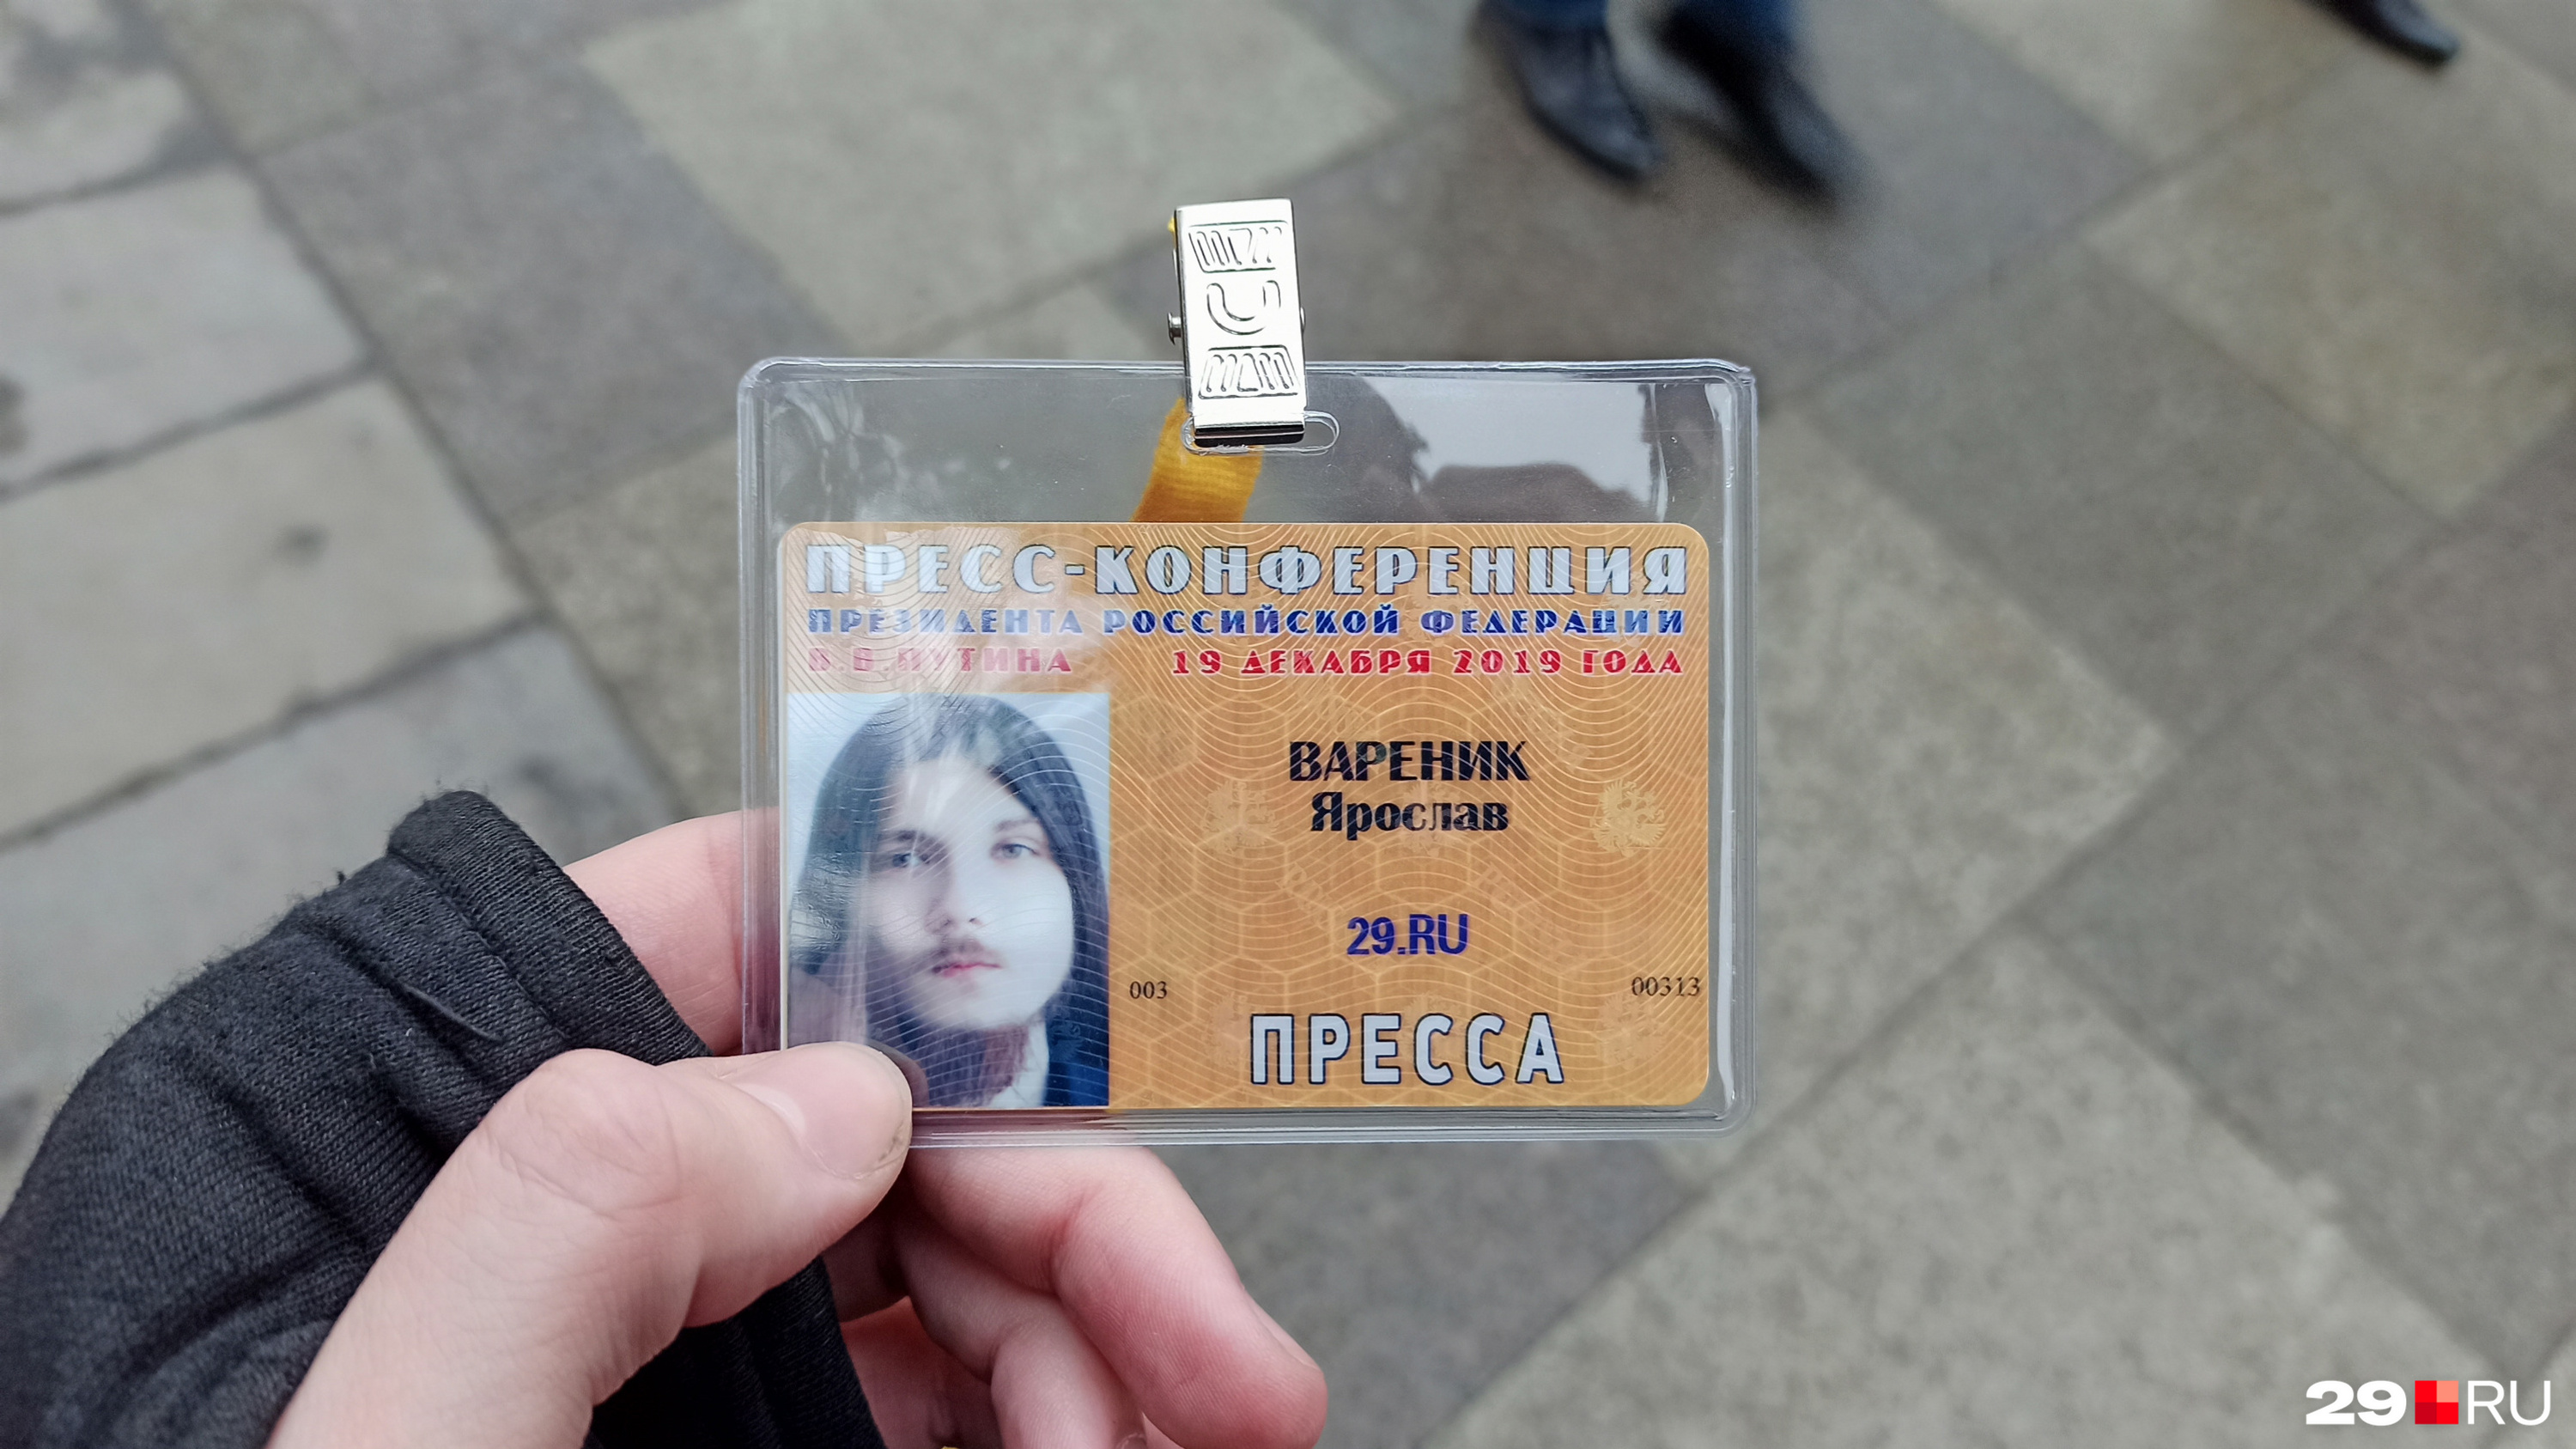 В итоге уже в Москве 18 декабря я получил свой бейдж